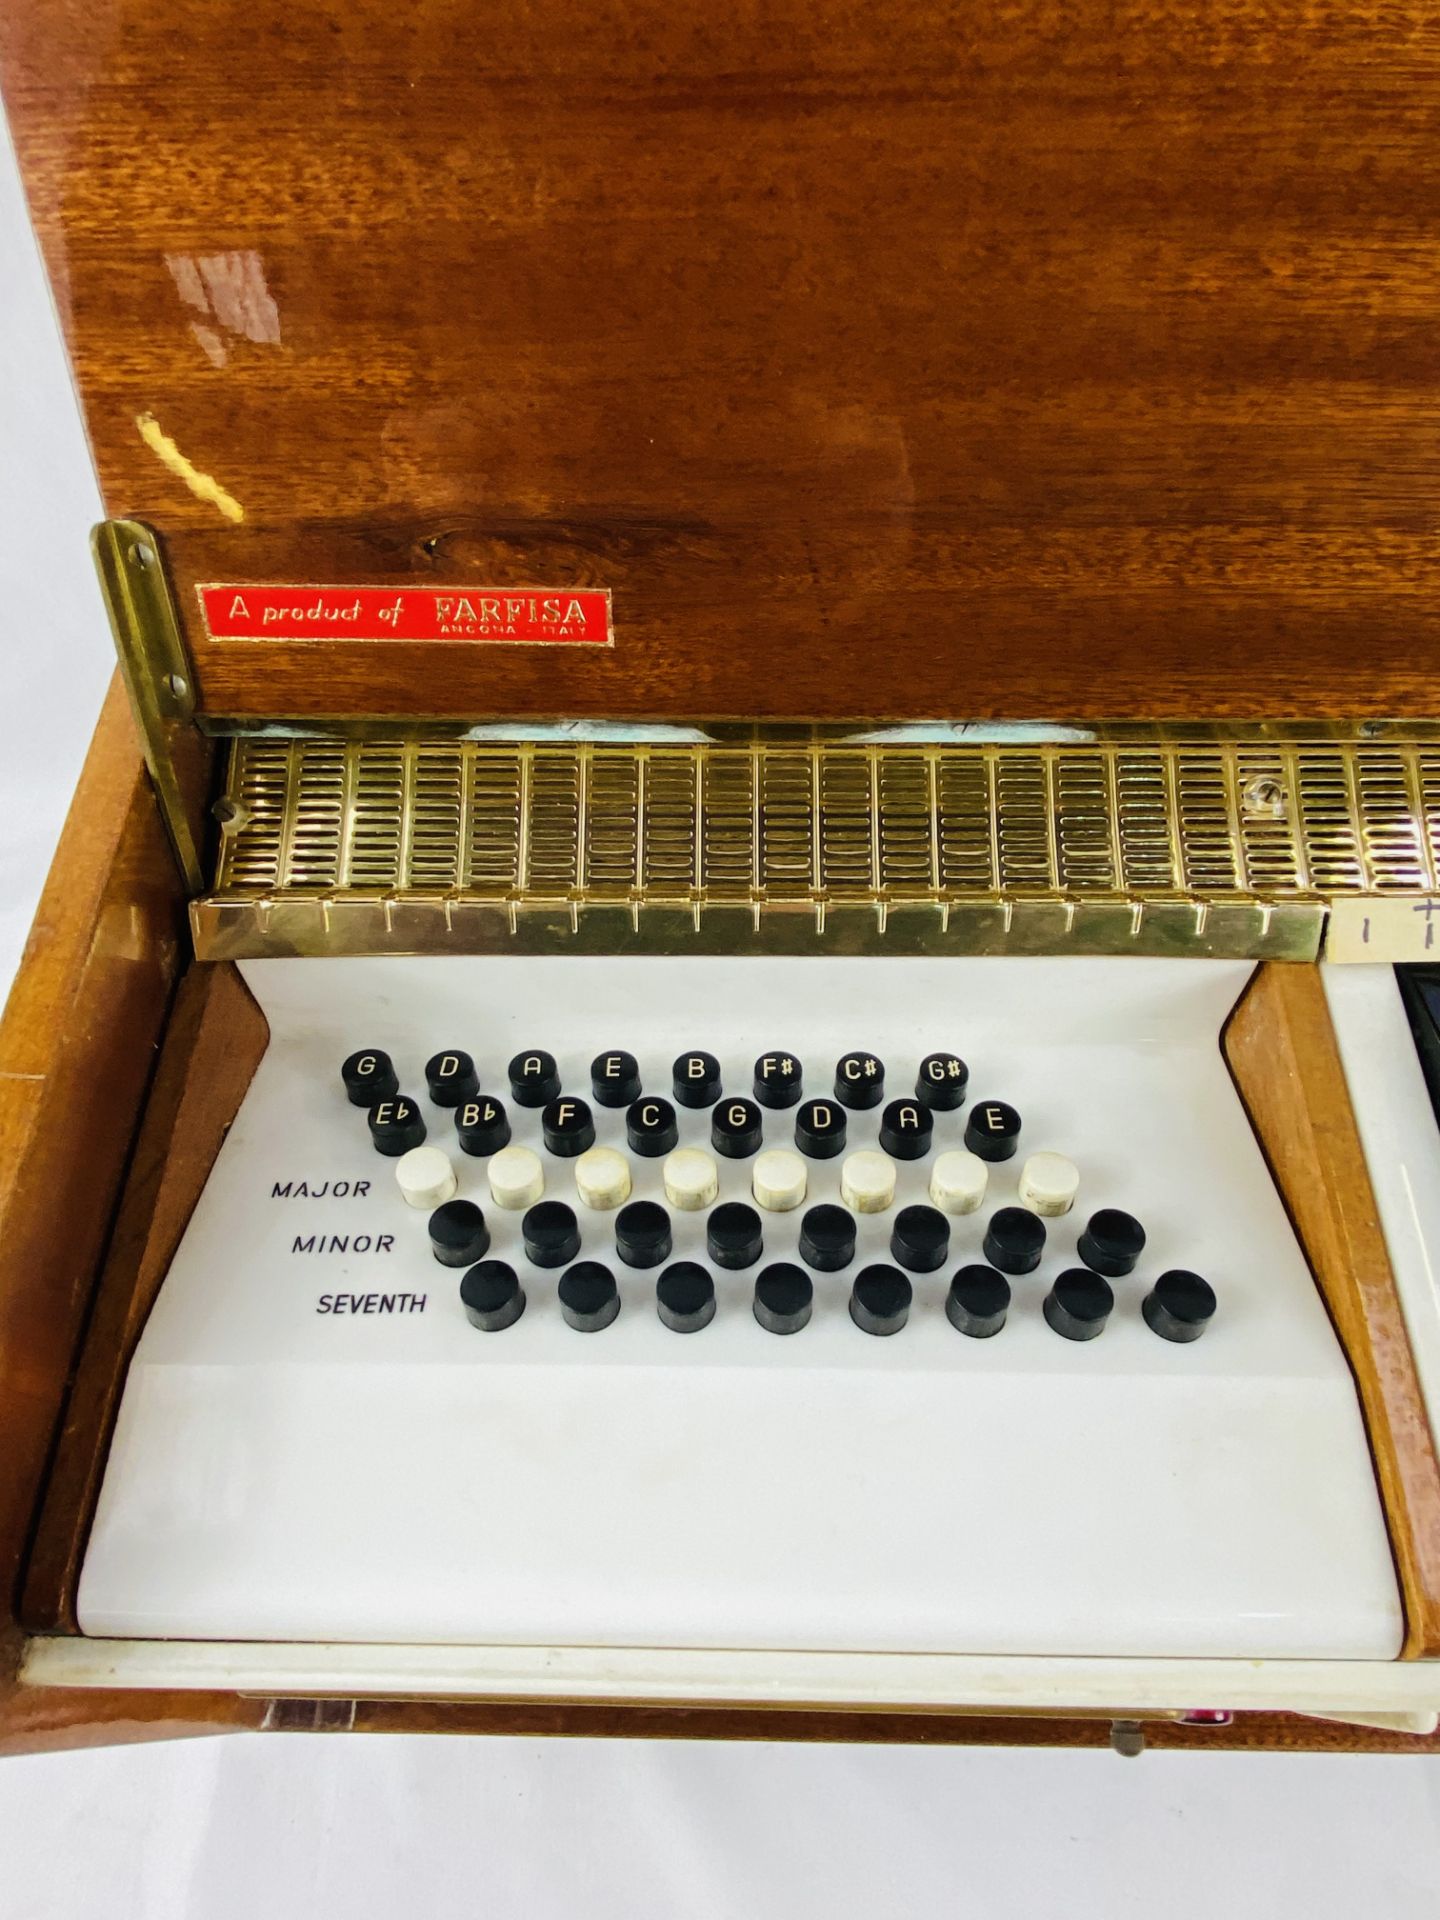 Gianorgani portable electric organ - Image 4 of 4